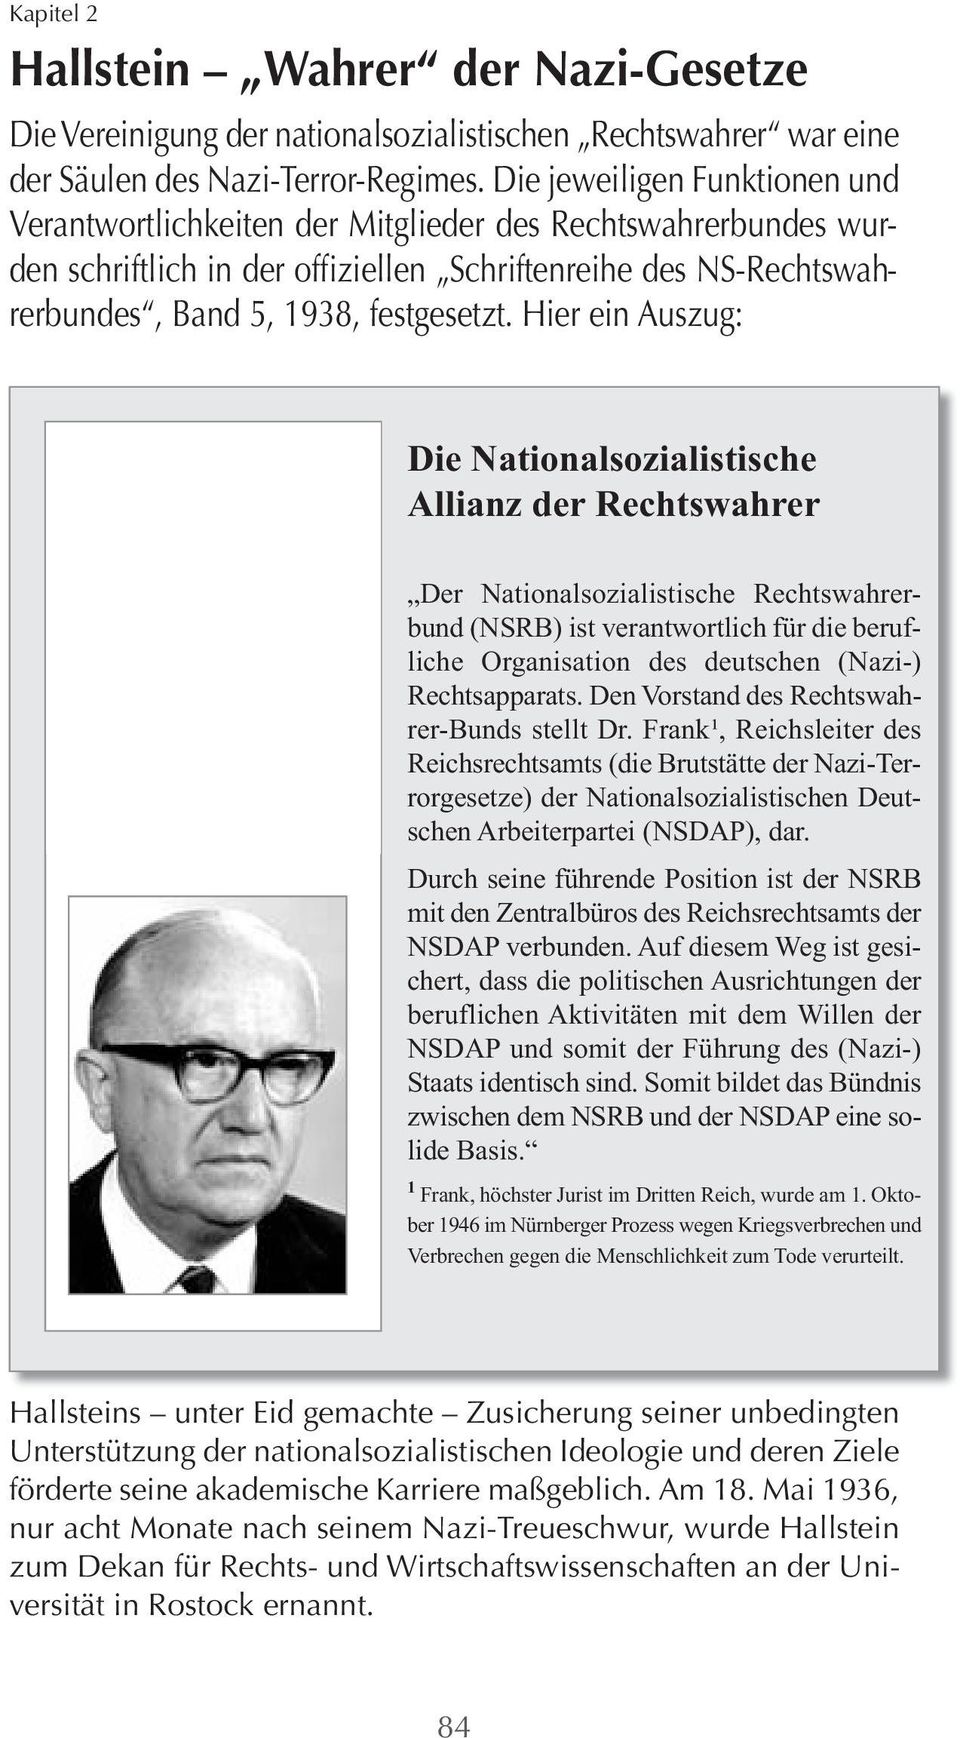 Hier ein Auszug: Die Nationalsozialistische Allianz der Rechtswahrer Der Nationalsozialistische Rechtswahrerbund (NSRB) ist verantwortlich für die berufliche Organisation des deutschen (Nazi-)